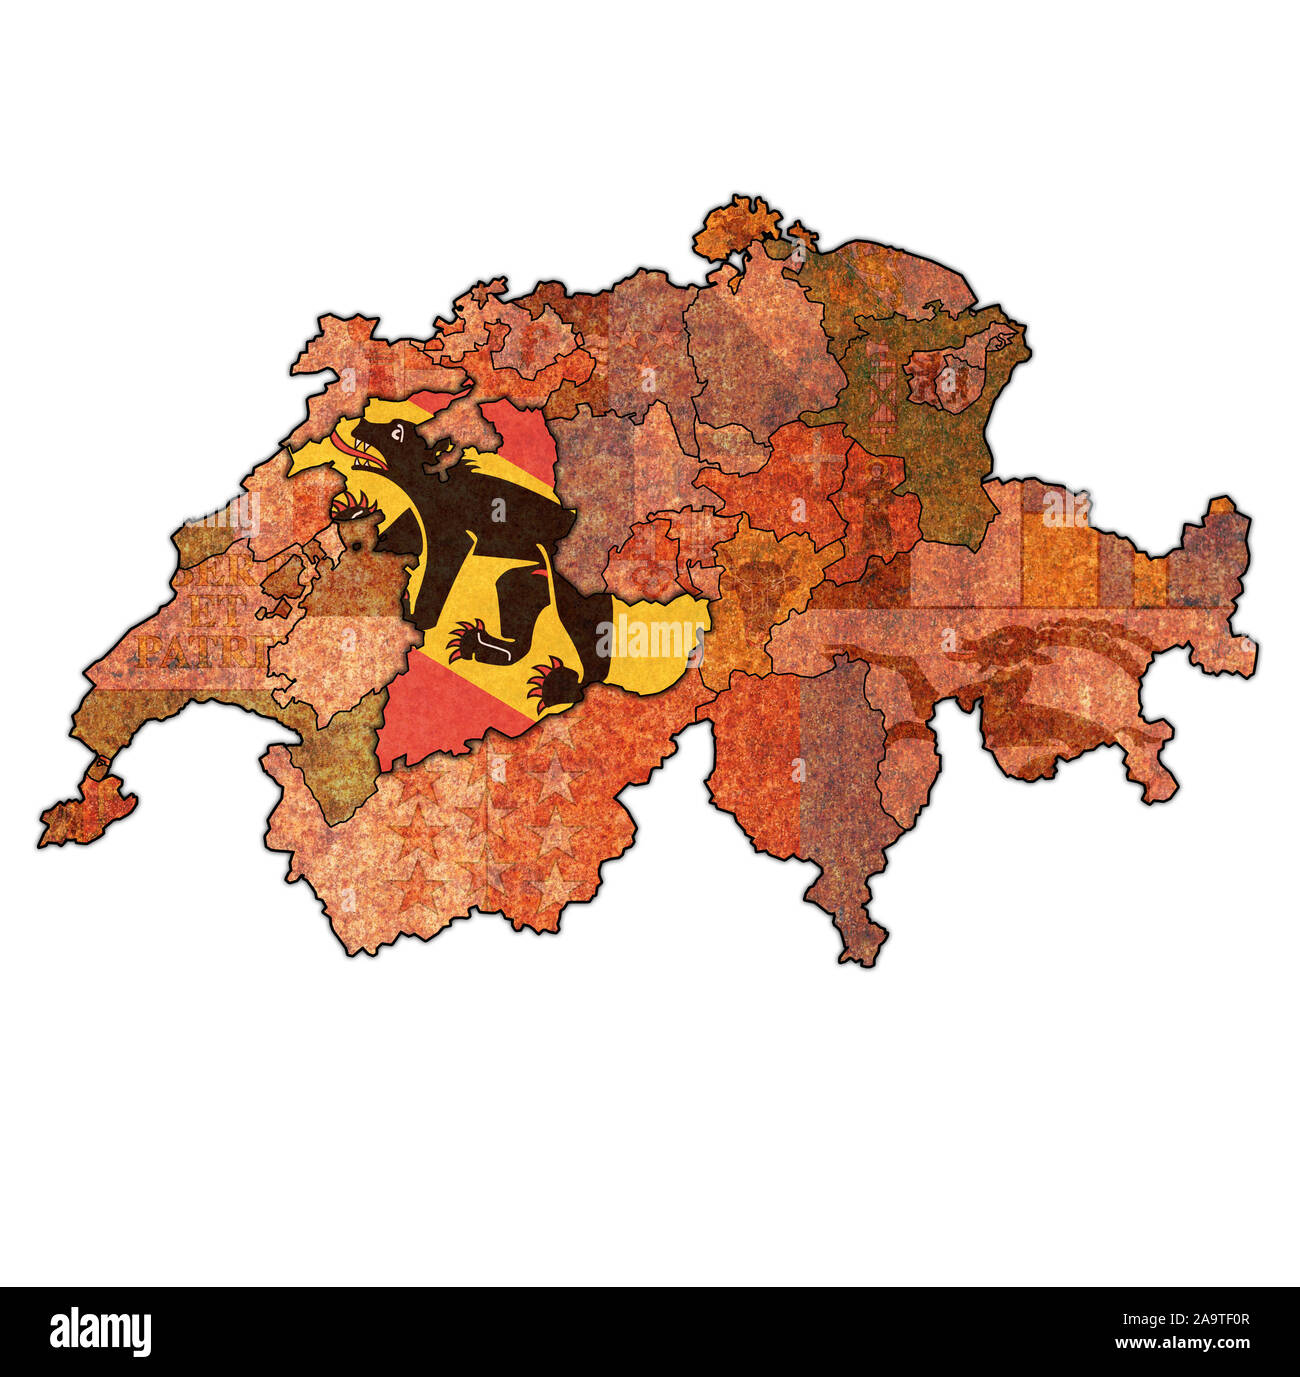 Drapeau et territoire du canton de Berne la carte des divisions administratives de la Suisse Banque D'Images